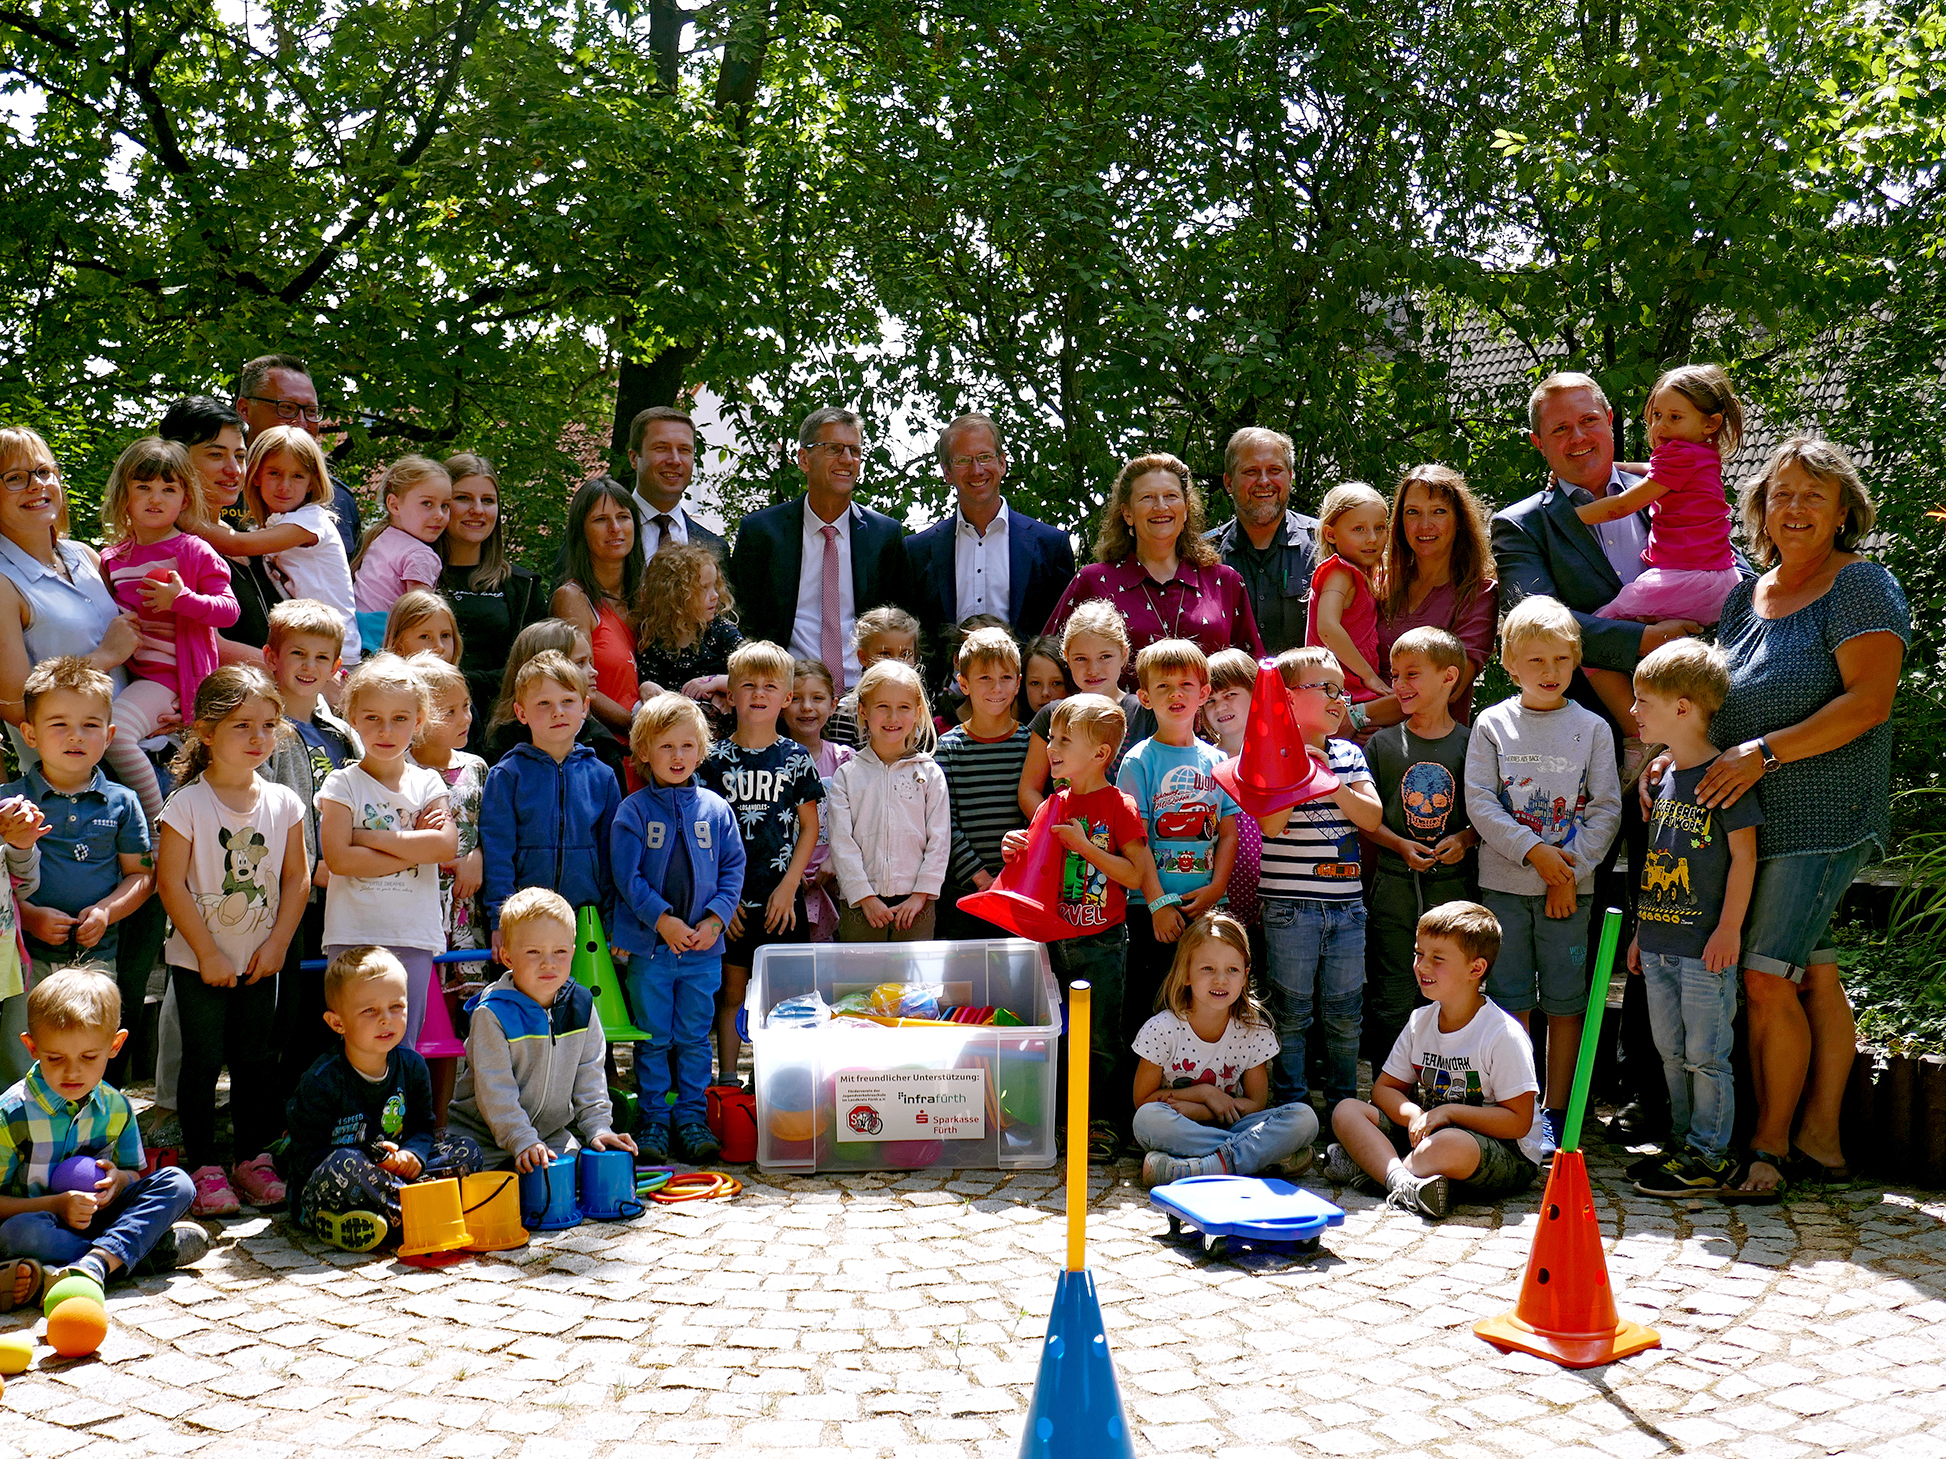 Um die wichtigsten Grundlagen vermitteln zu können, will der Förderverein mit sogenannten „Mobilitätskisten“ den Kindergärten im Landkreis Fürth die entsprechende Ausstattung zur Verfügung stellen.